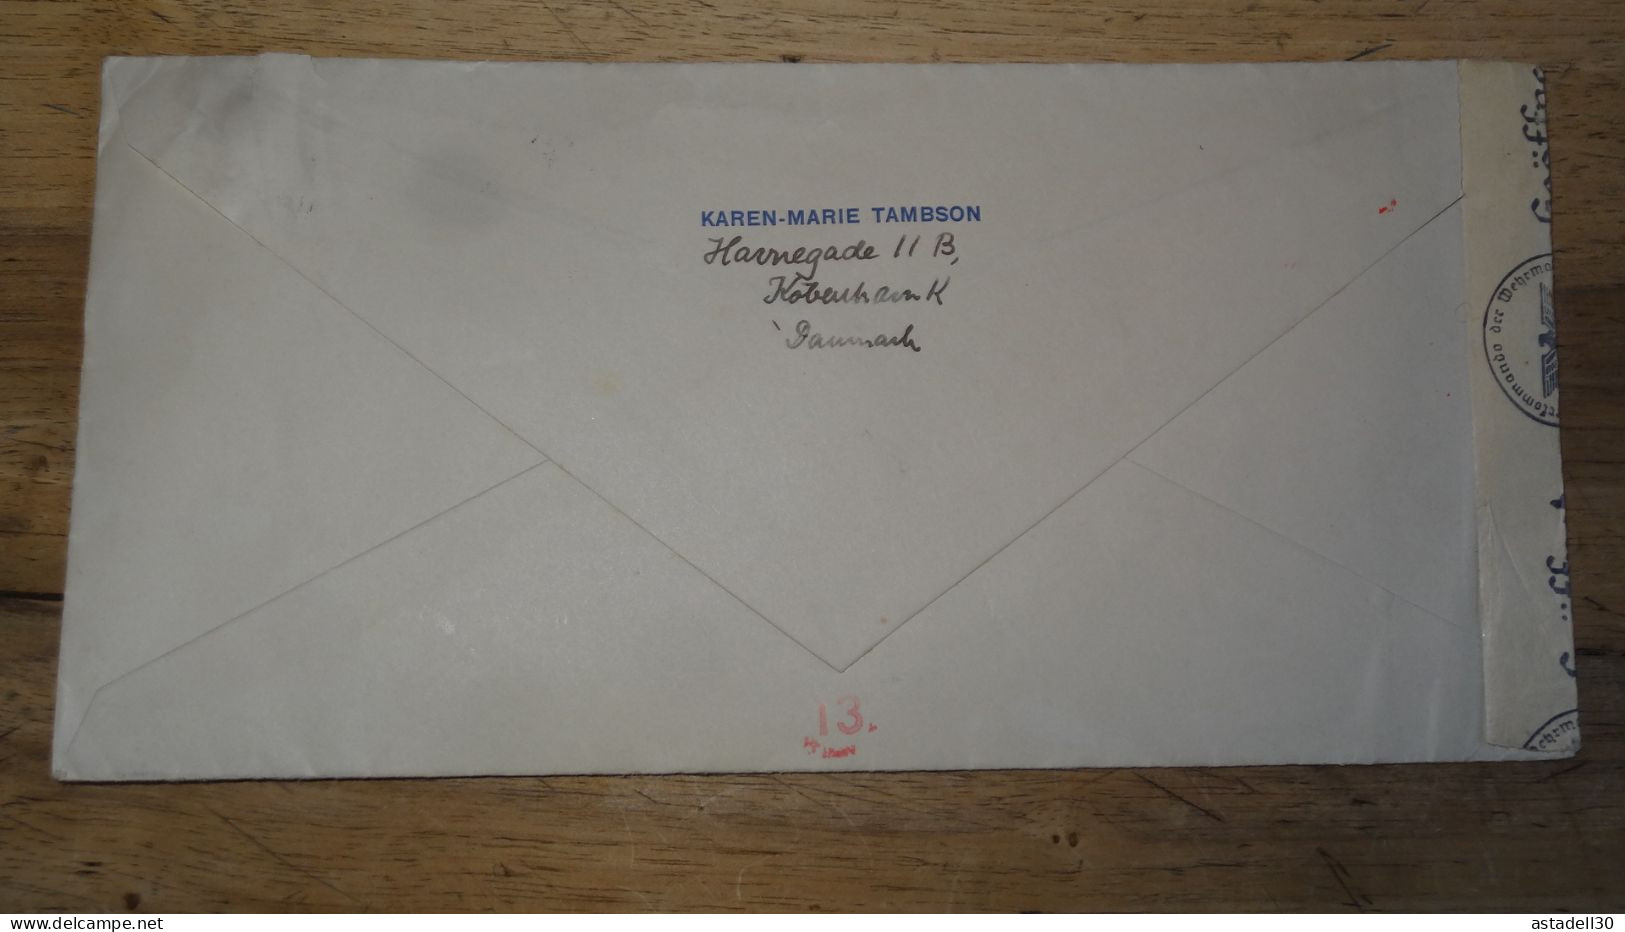 Grande Enveloppe DANEMARK, Avec Censure - 1942 .......... 240424......... CL9-57a - Lettres & Documents